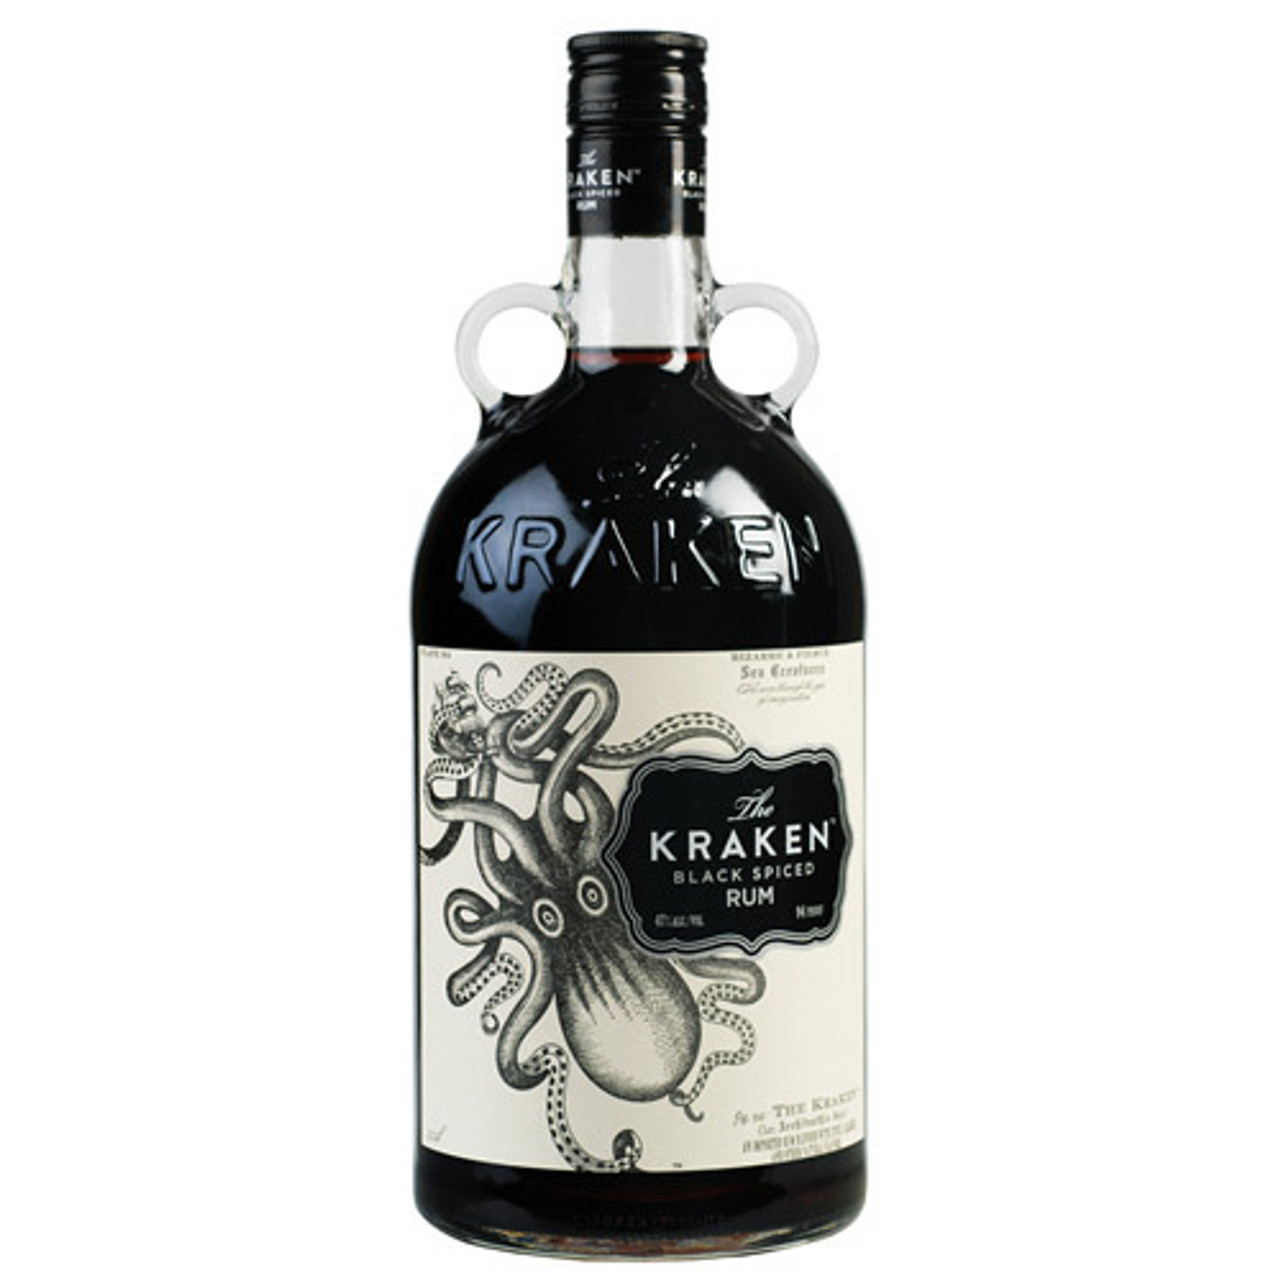 Kraken Black Spiced Rum 1.75L - Haskells